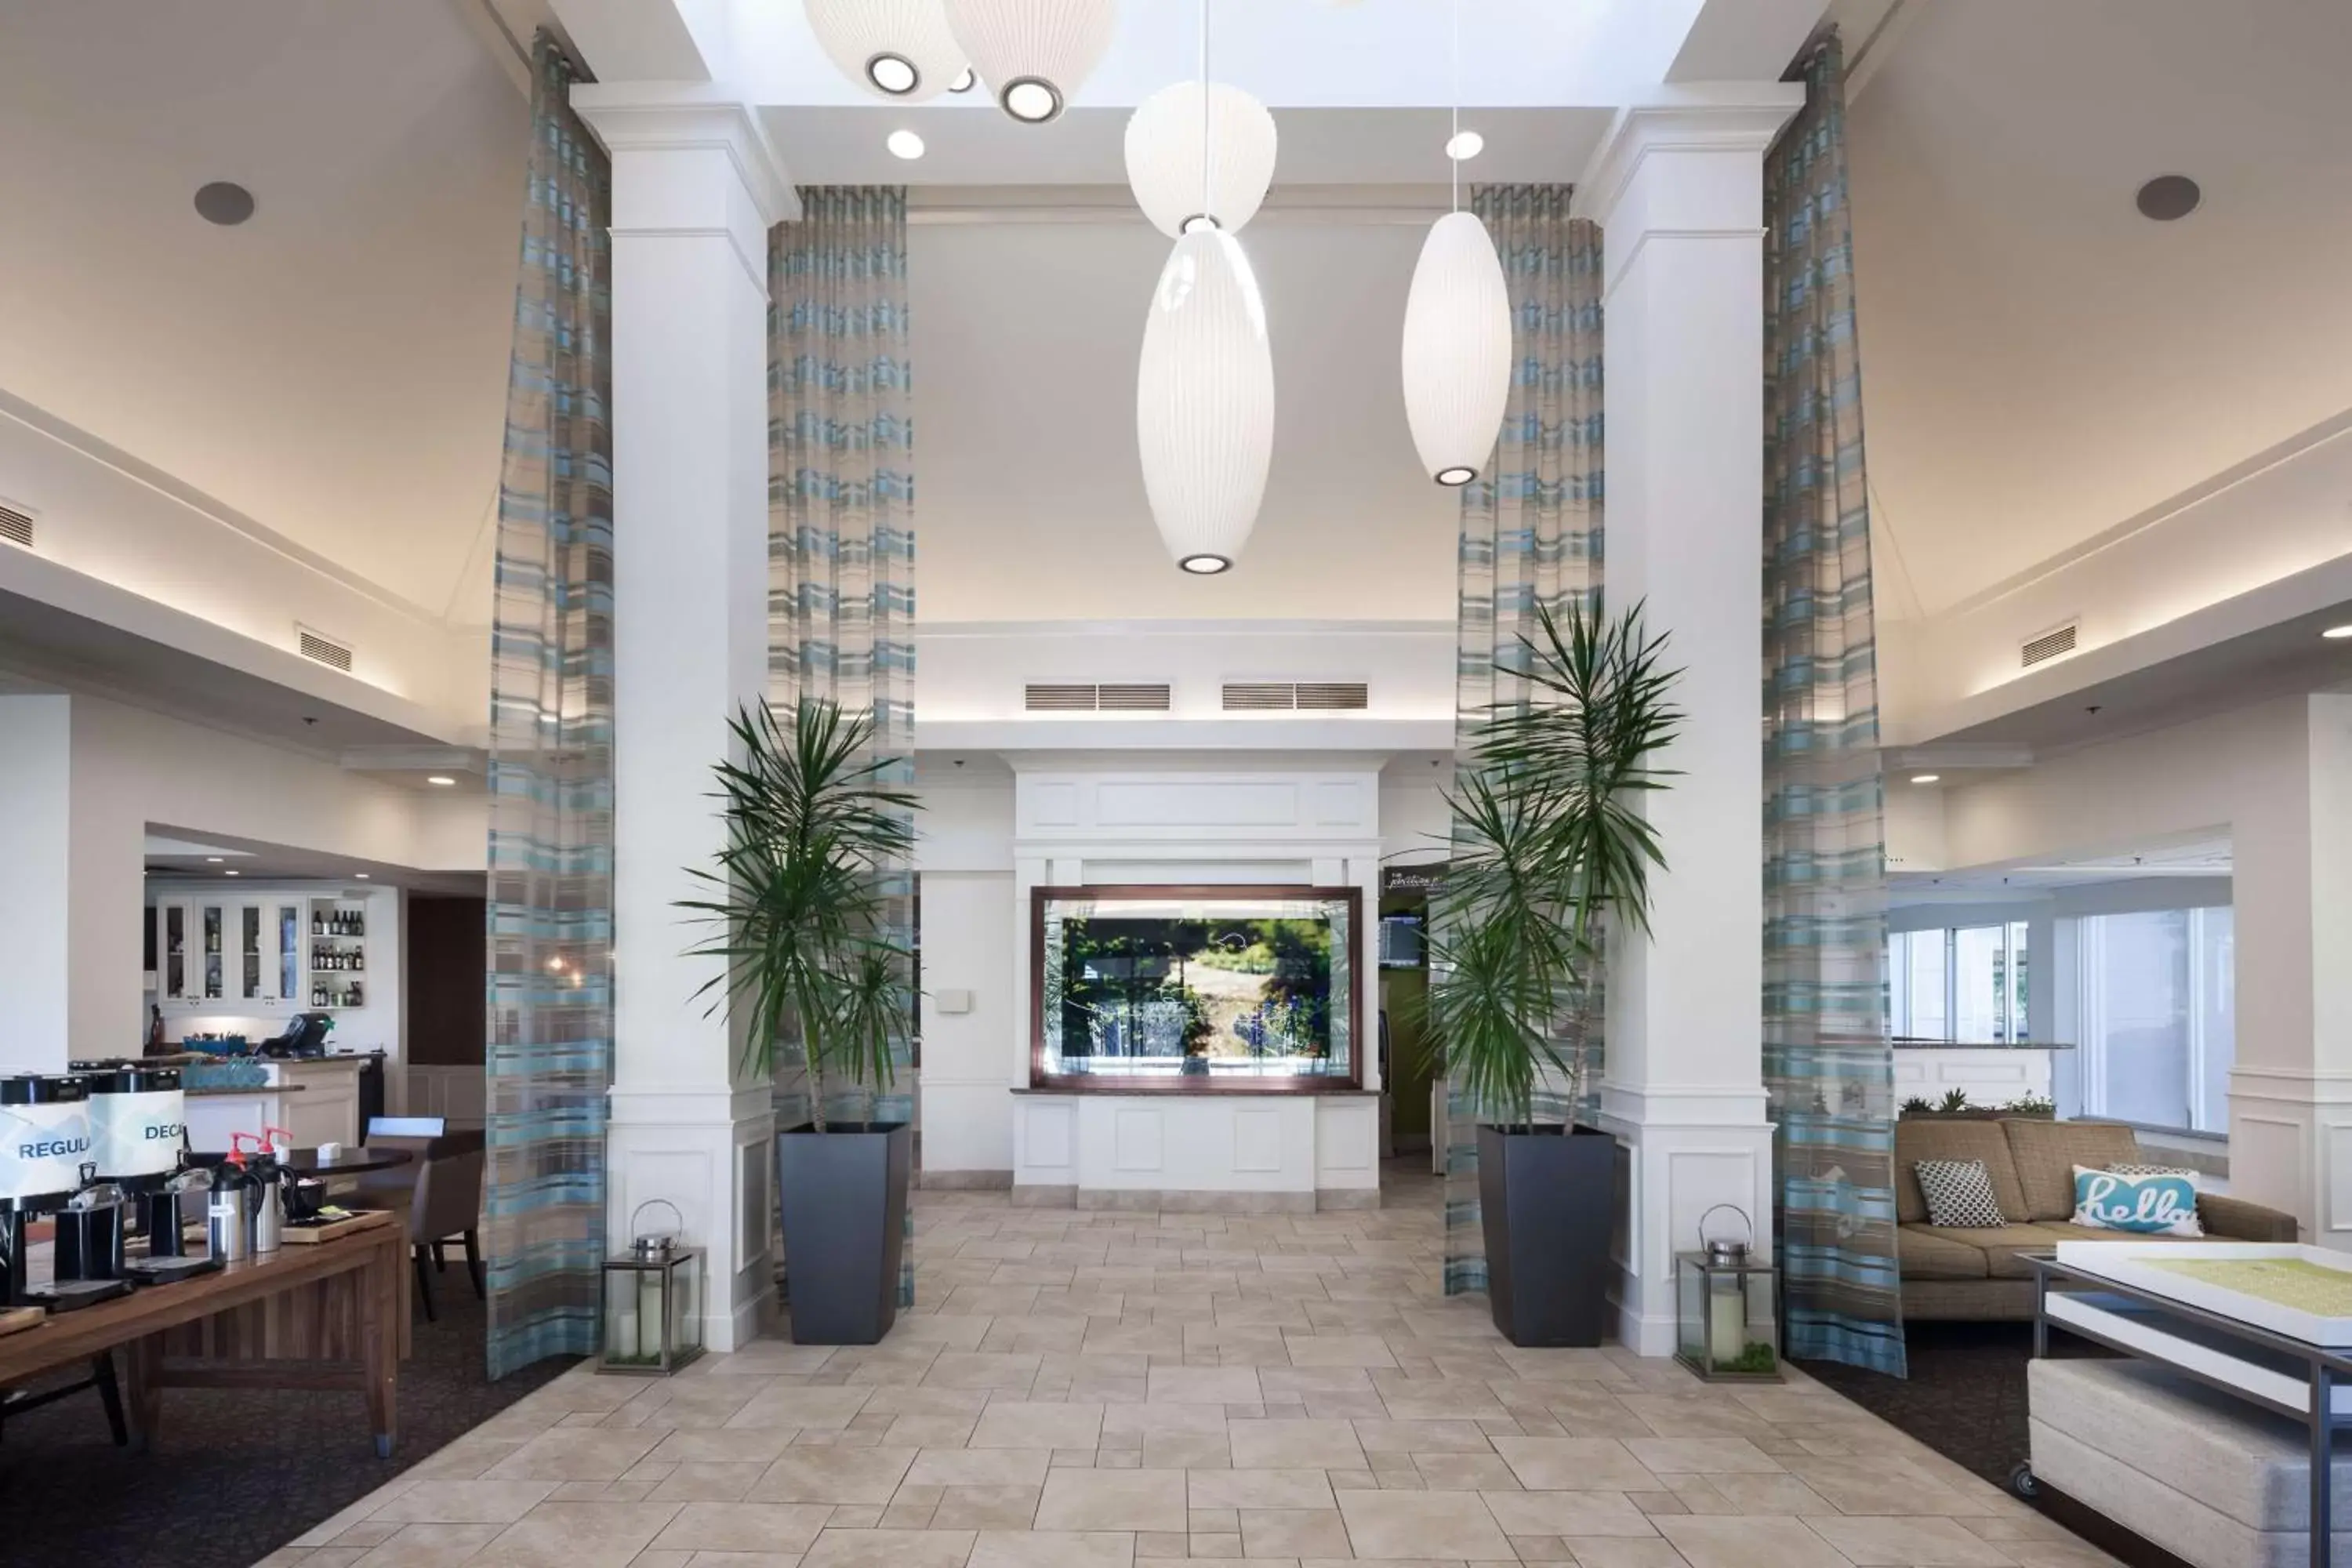 Lobby or reception, Lobby/Reception in Hilton Garden Inn Savannah Airport